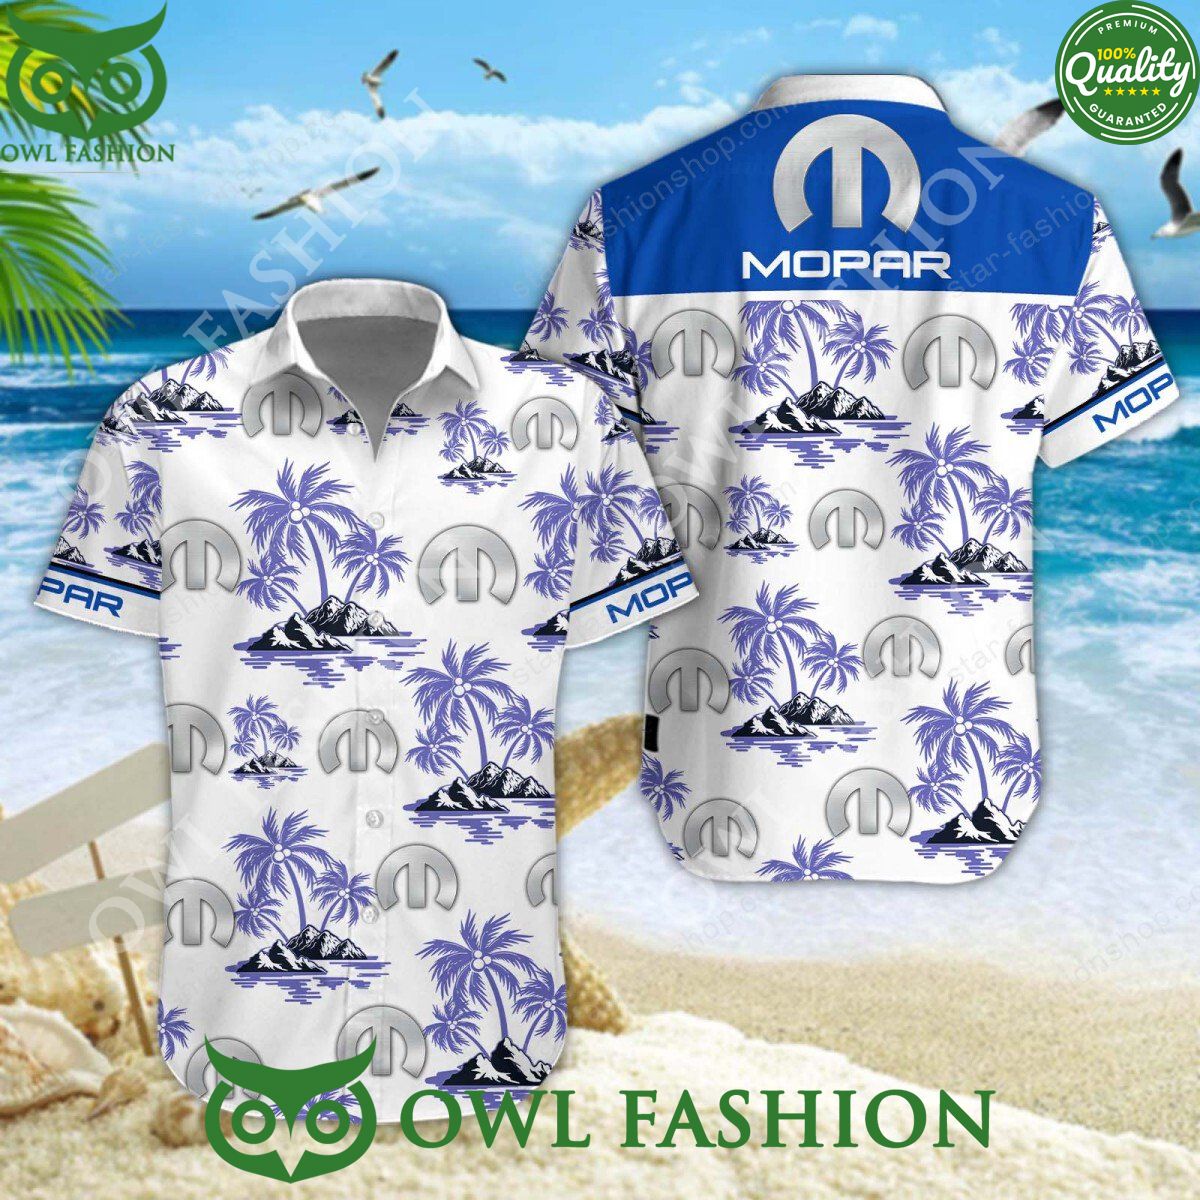 mopar luxury car manufacturer limited hawaiian shirt shorts 1 PNIQu.jpg